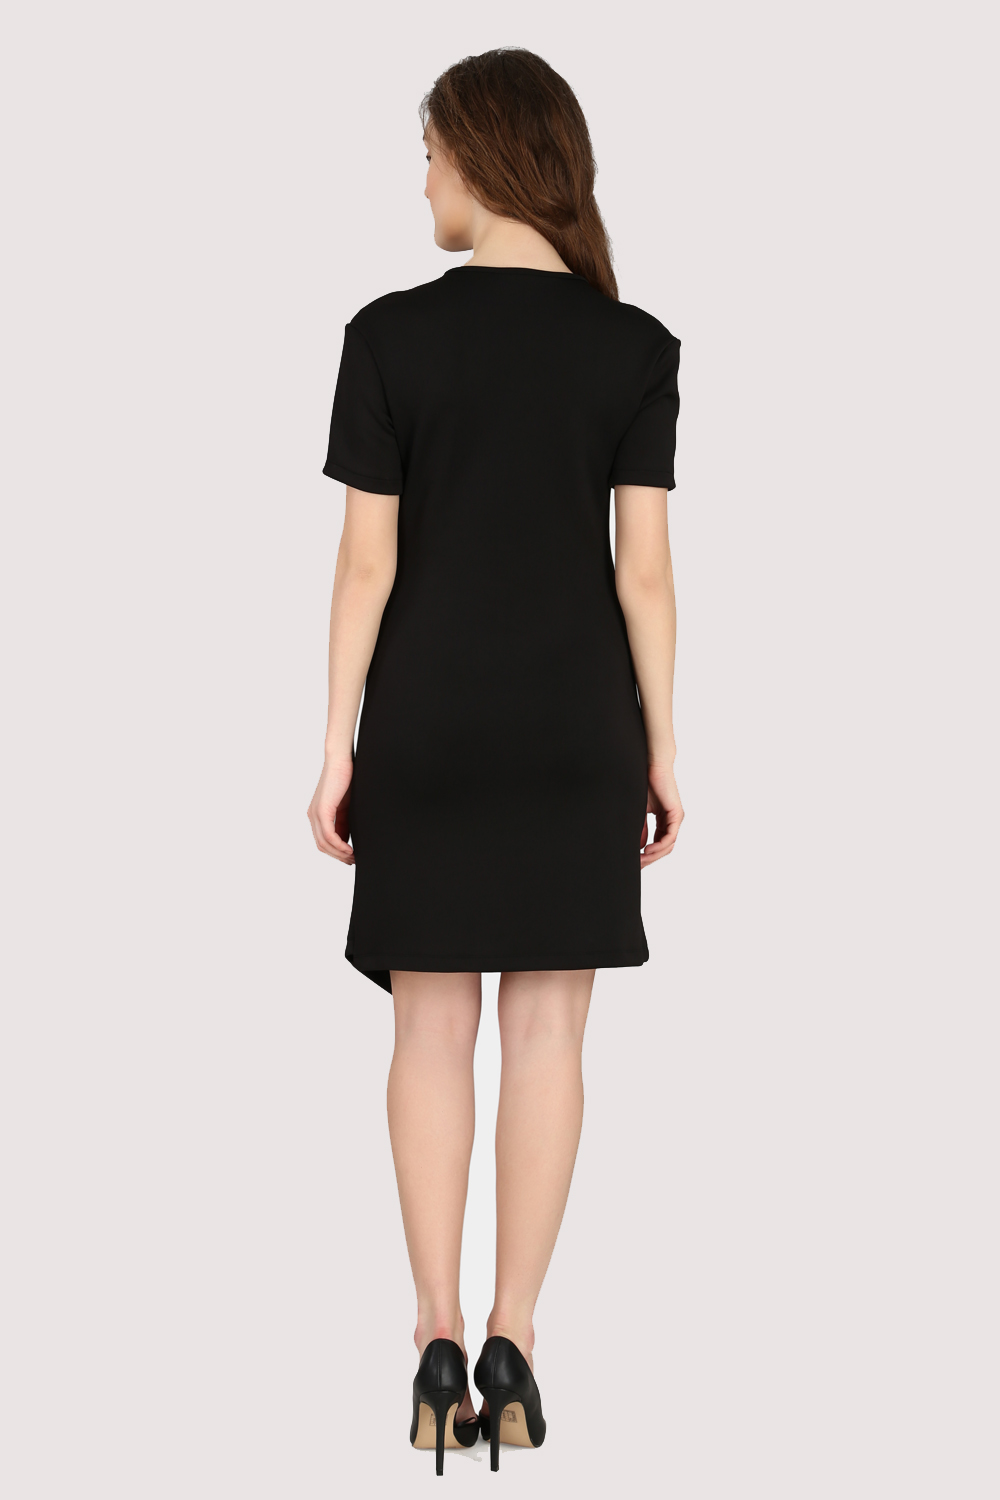 Black Asymmetric Dress -1